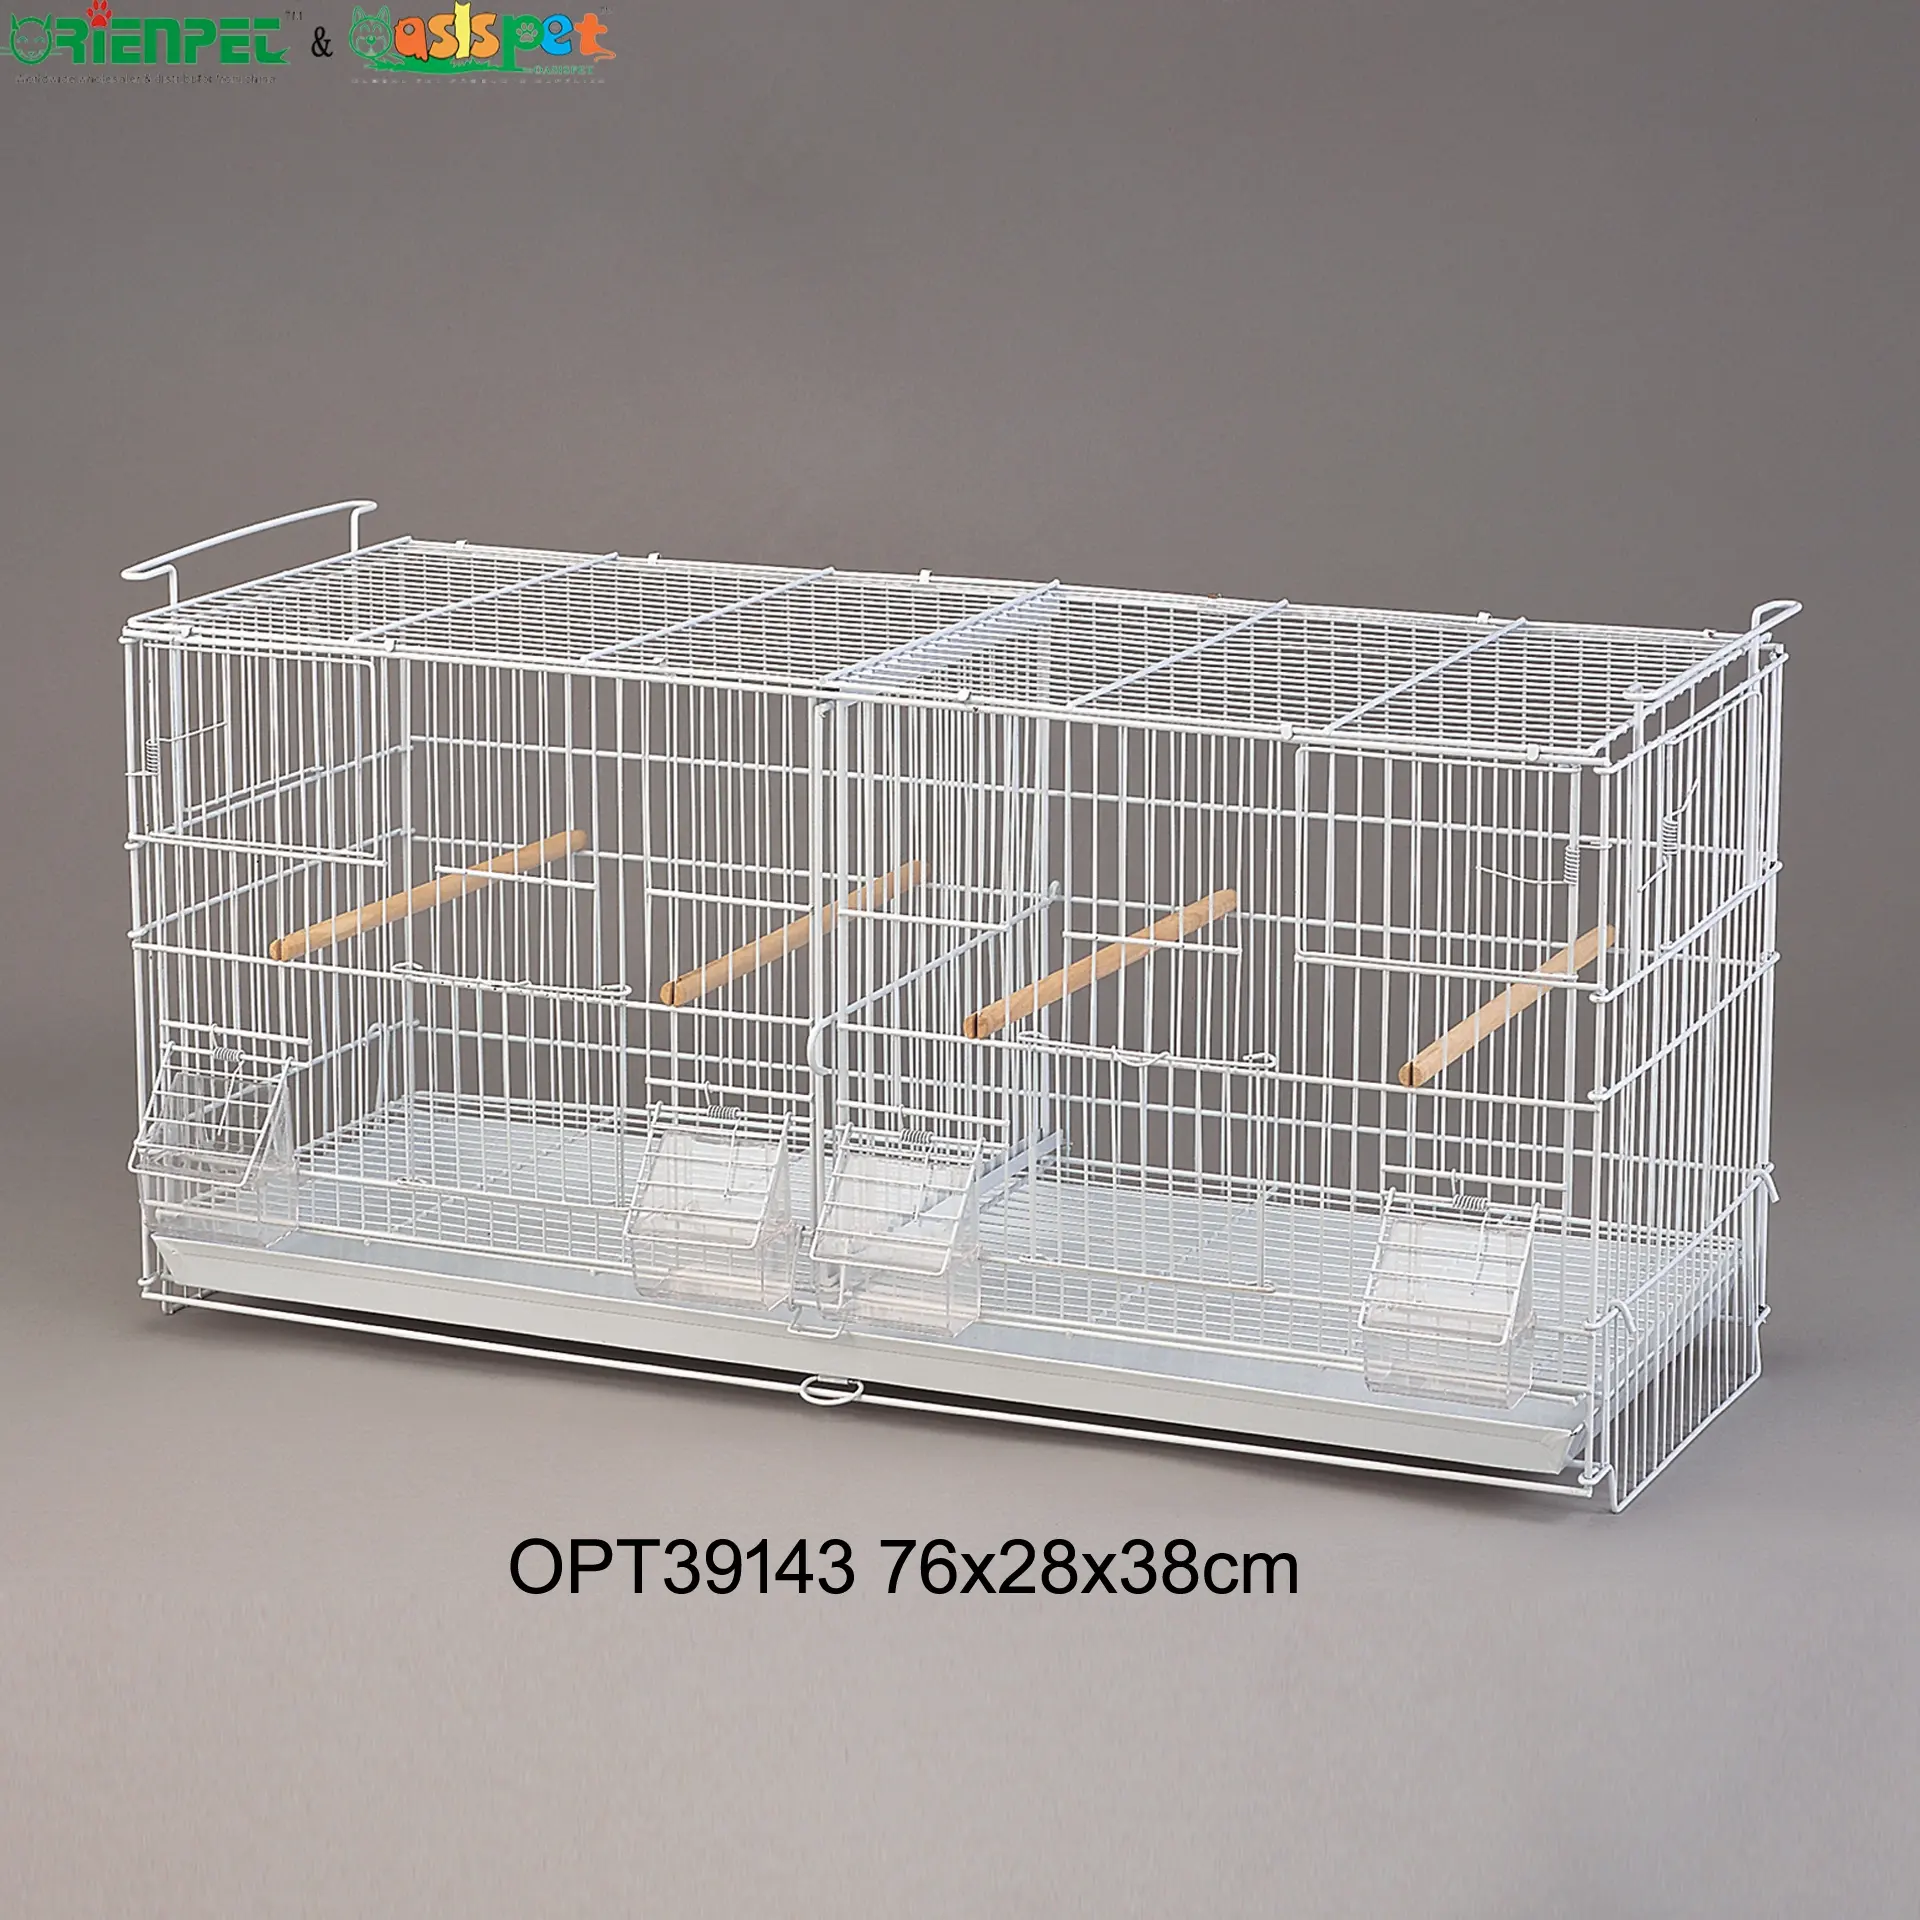 ORIENPET & OASISPET Cage d'élevage d'oiseaux en fil métallique pour animaux de compagnie Stock prêt OPT39143 Cage pour animaux de compagnie